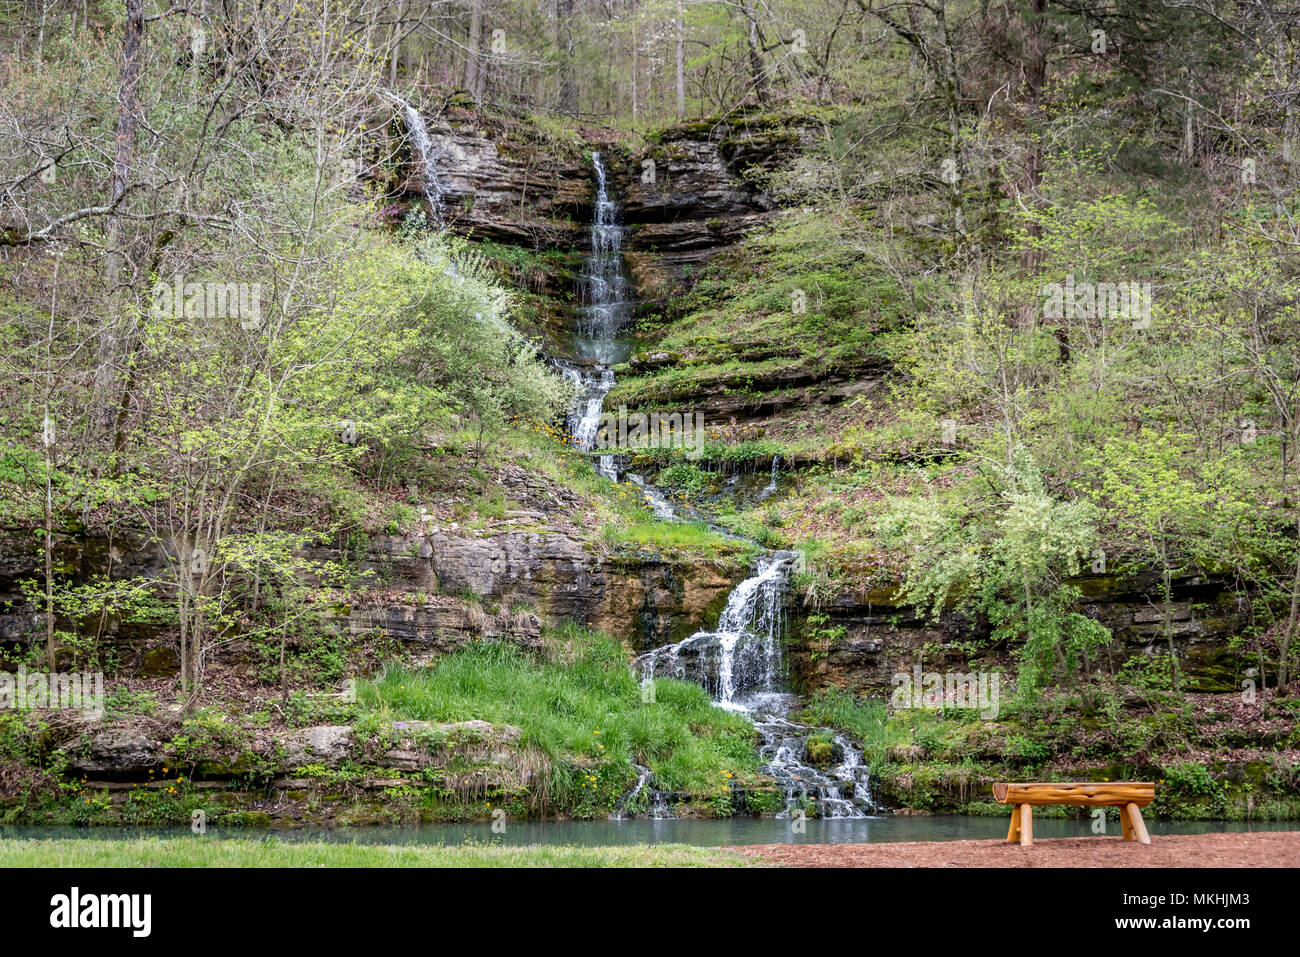 Zwei Wasserfälle, symbolisch zu einer in Hartriegel Canyon Nature Park, ein beliebter Ort für Hochzeitsfotos und Vorschläge in der Nähe von Branson, Missouri, USA. Stockfoto